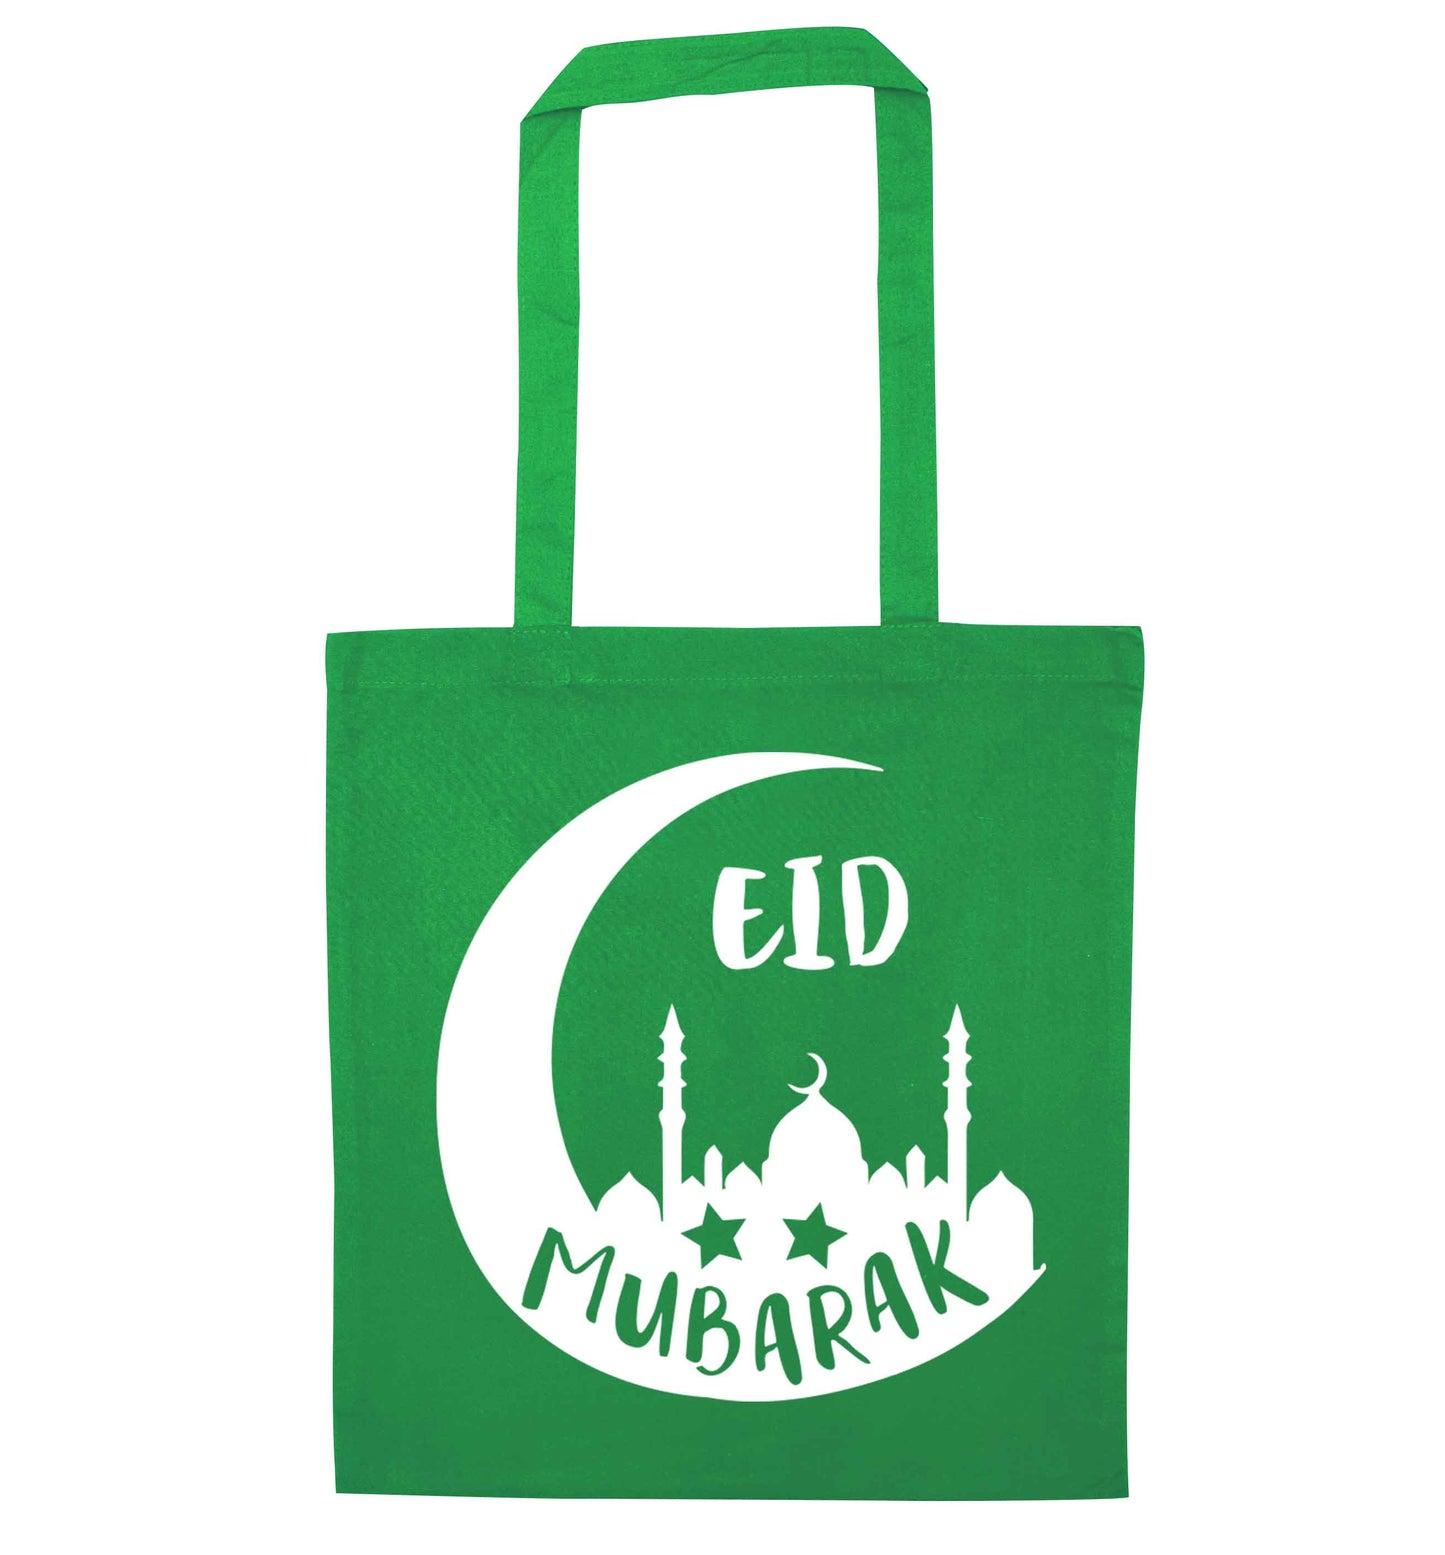 Eid mubarak green tote bag